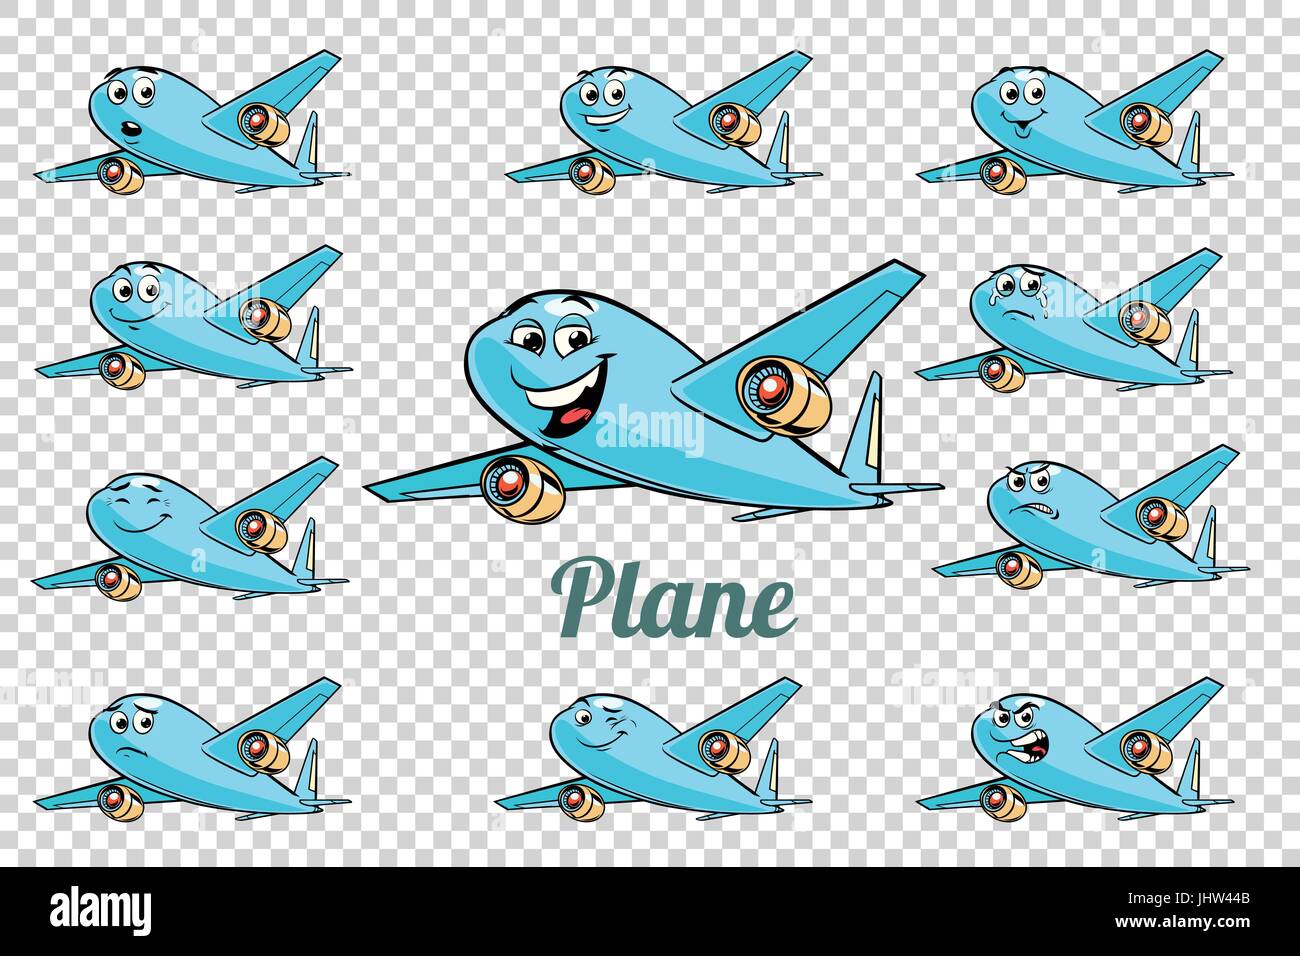 Flugzeug Flugzeug Flugzeug Luftfahrt Emotionen Figuren Sammlung. Isolierten neutralen Hintergrund. Retro Comic Buch Style Cartoon Pop-Art Vektor hinsichtlich Stock Vektor